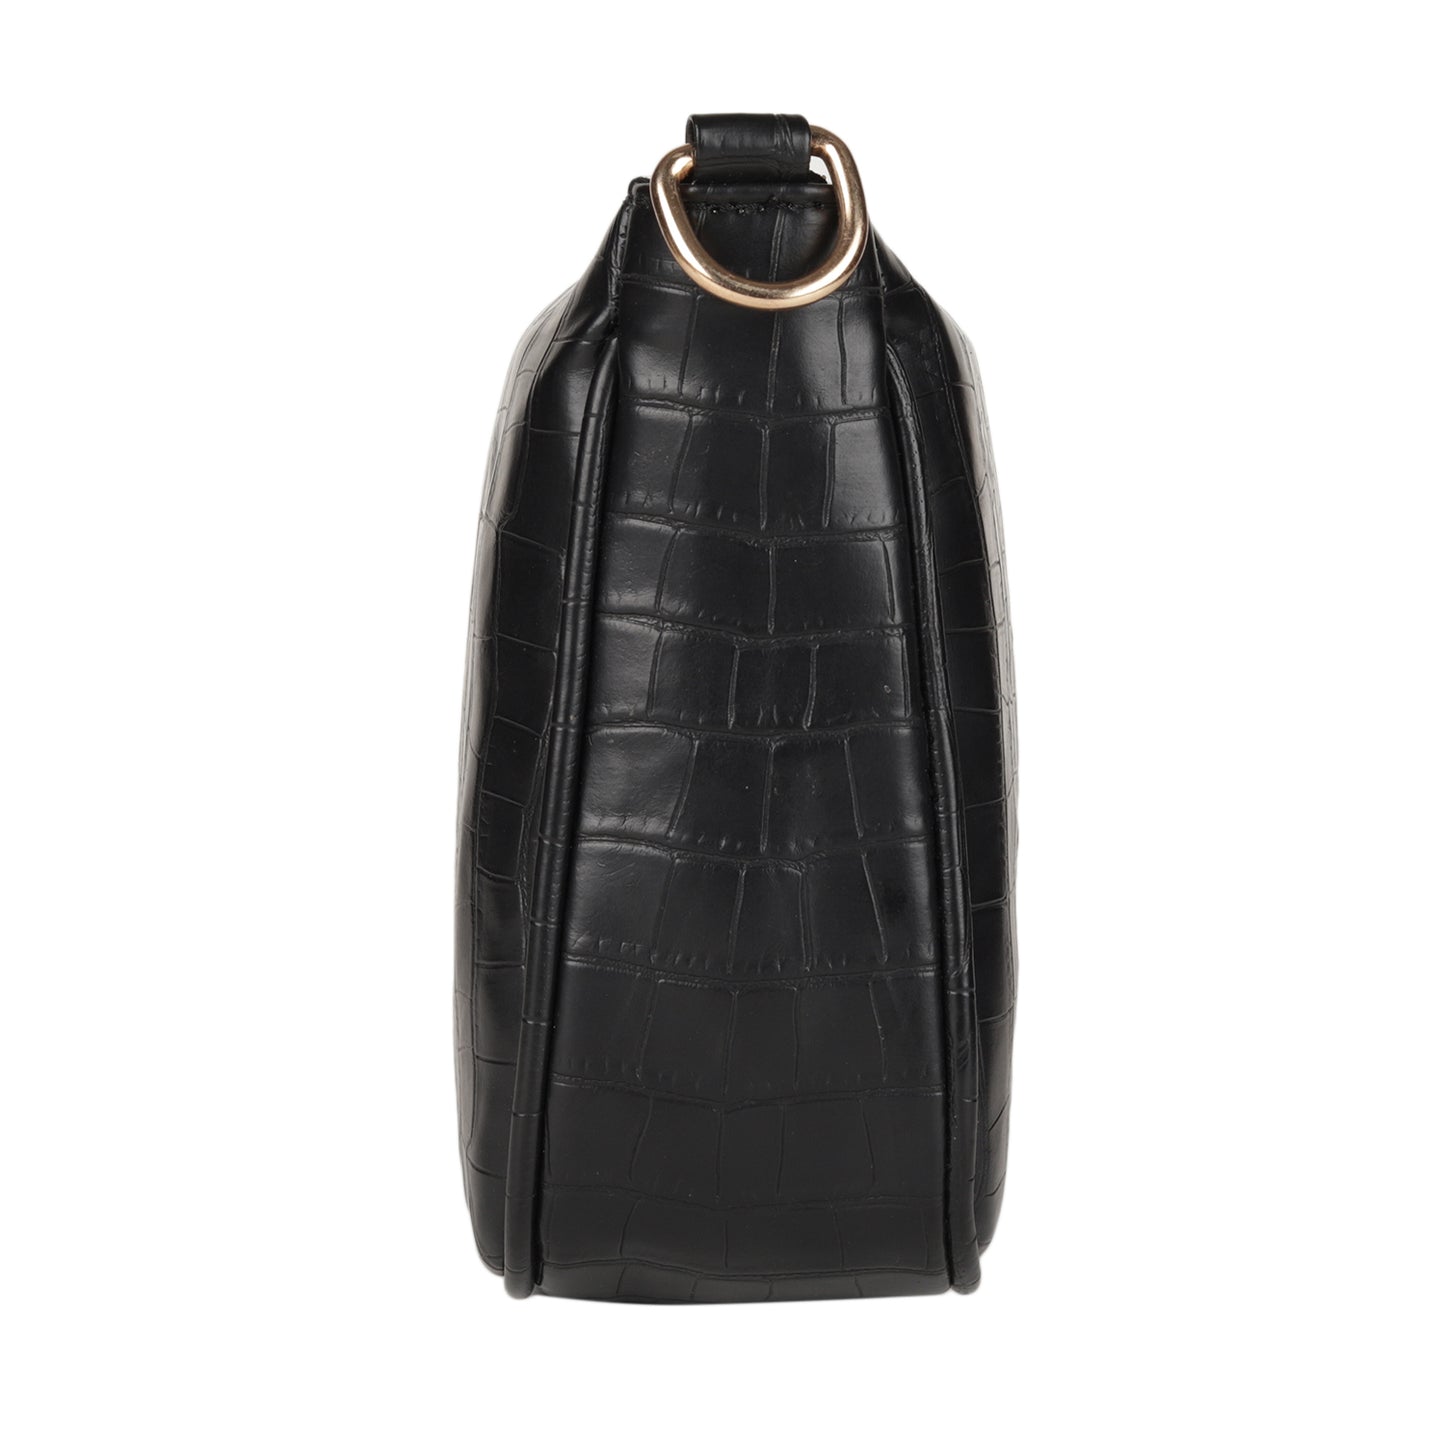 MINI WESST Women's Black Handbags(MWSB012BL)